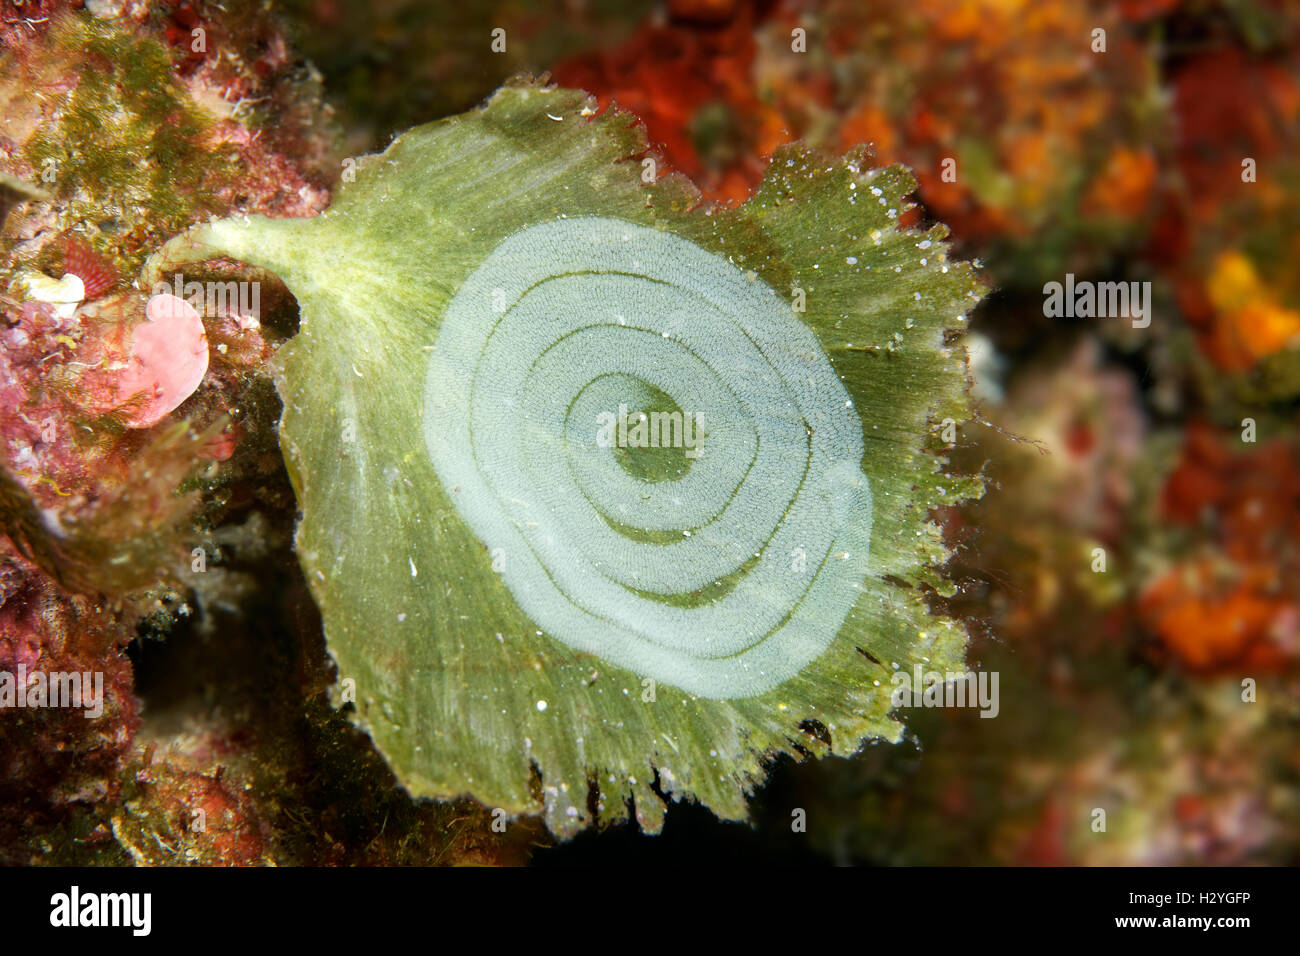 Scrims a slug on Algae (Udotea petiolata), Sithonia, Chalkidiki, also Halkidiki, Aegean, Mediterranean, Greece Stock Photo